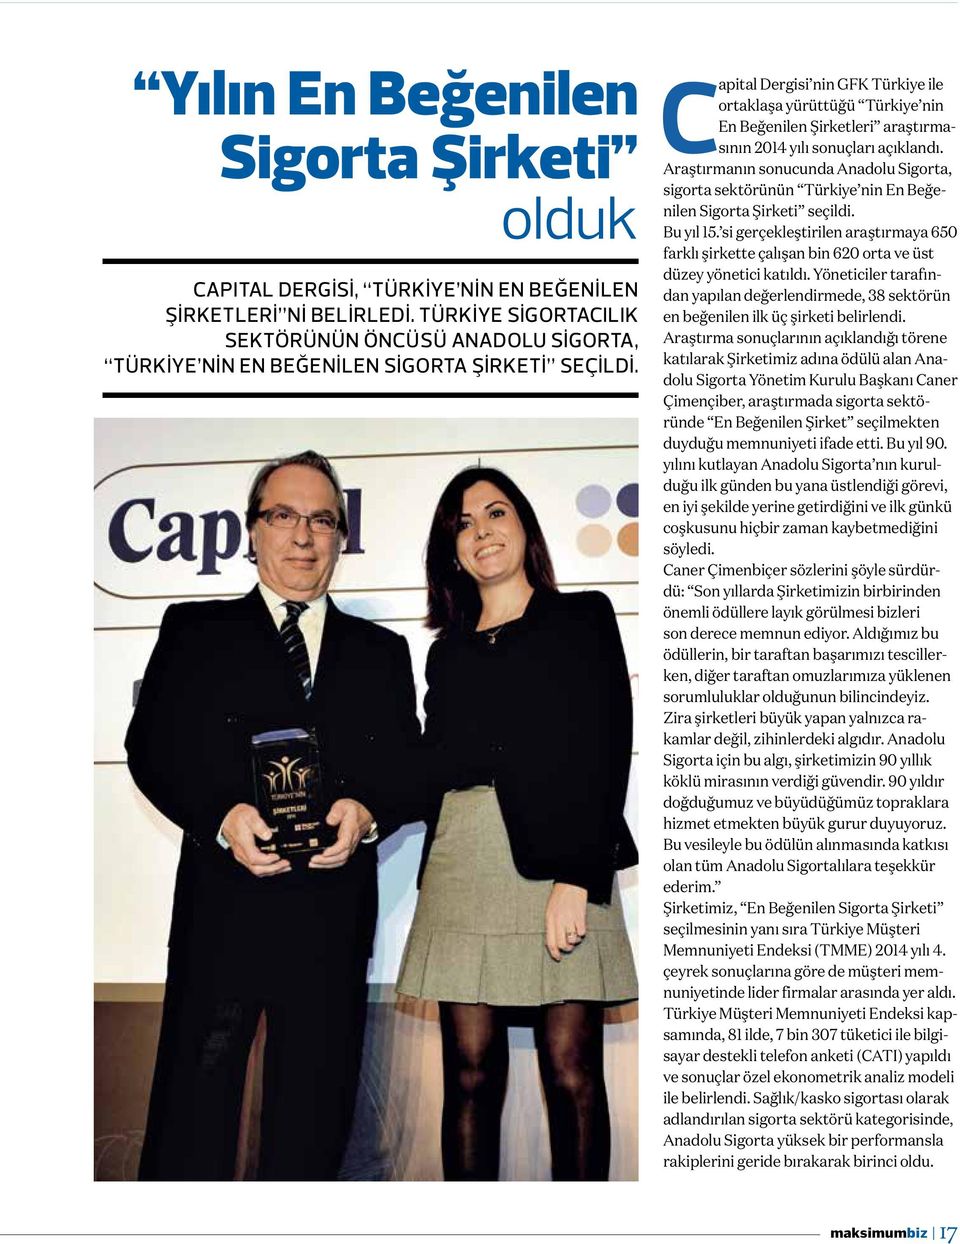 Capital Dergisi nin GFK Türkiye ile ortaklaşa yürüttüğü Türkiye nin En Beğenilen Şirketleri araştırmasının 2014 yılı sonuçları açıklandı.